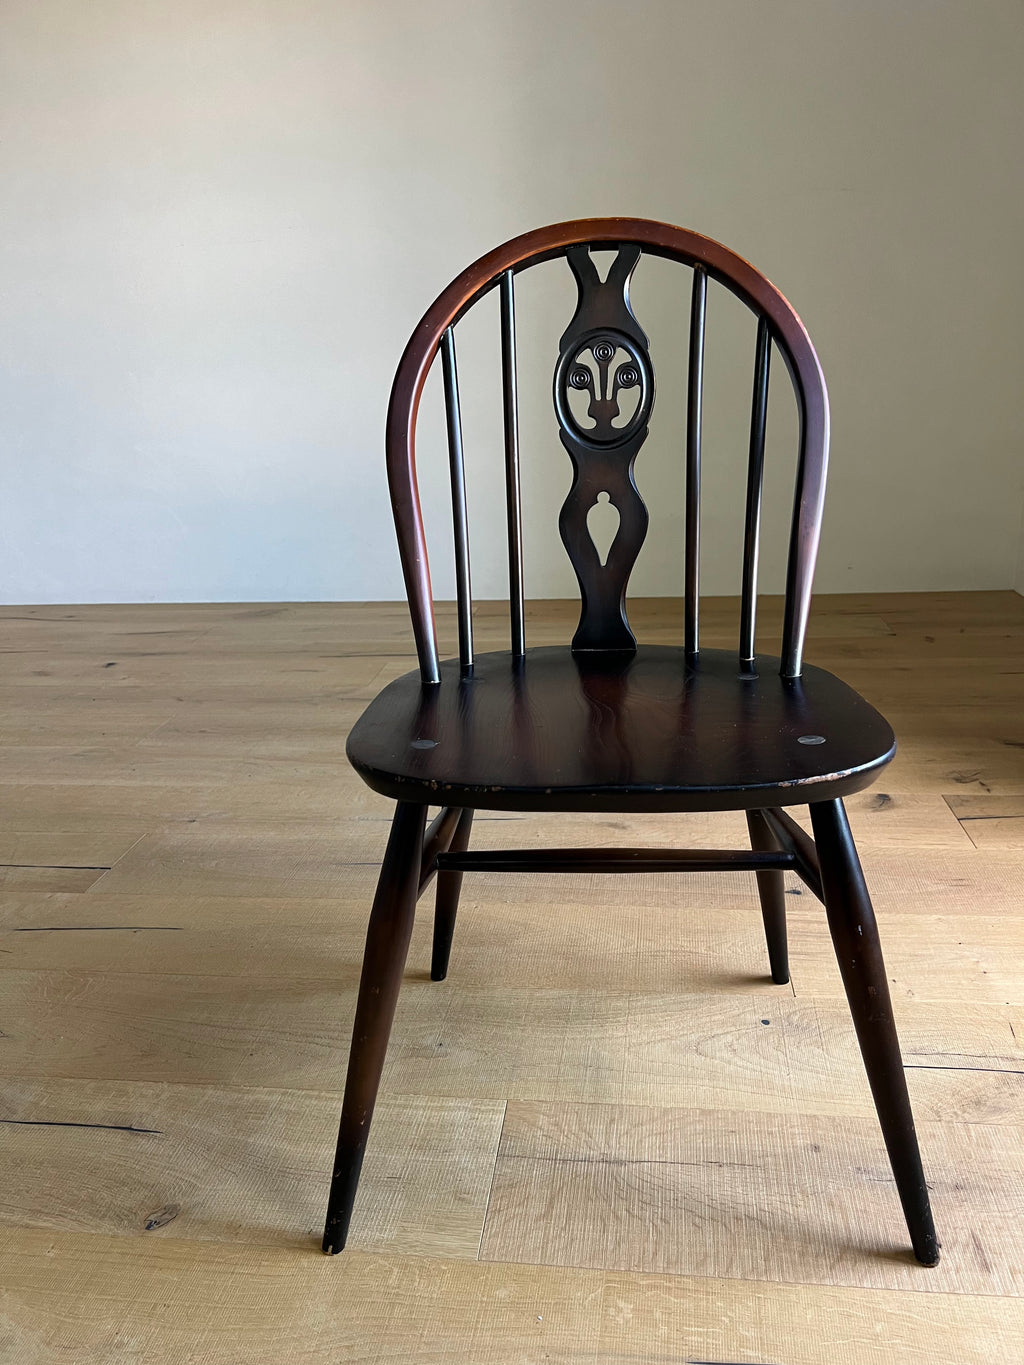 アーコール 'シスルバック' チェア / ercol old colonial windsor chair '371' #0244